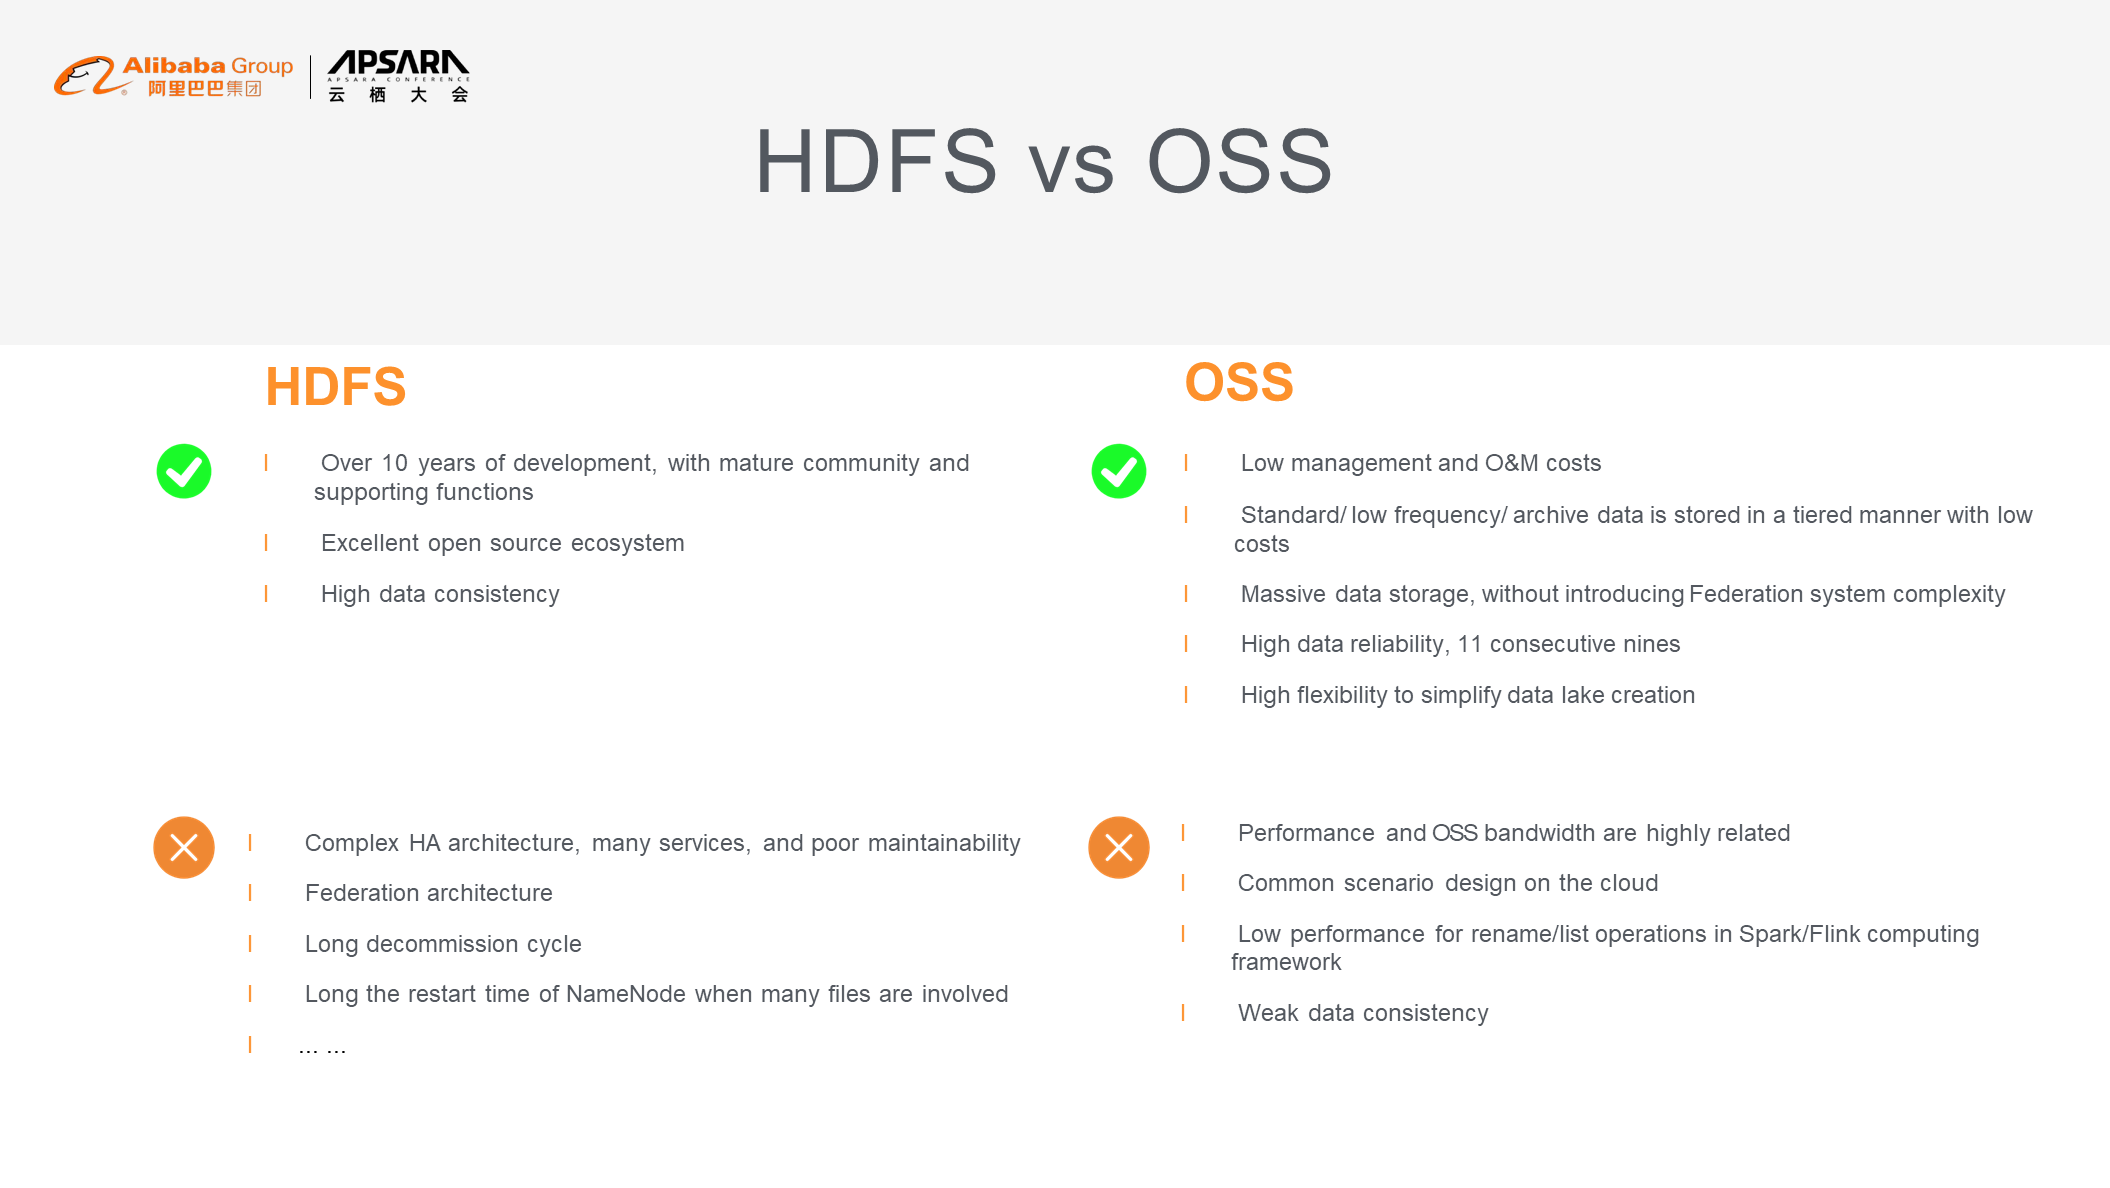 HDFS vs OSS